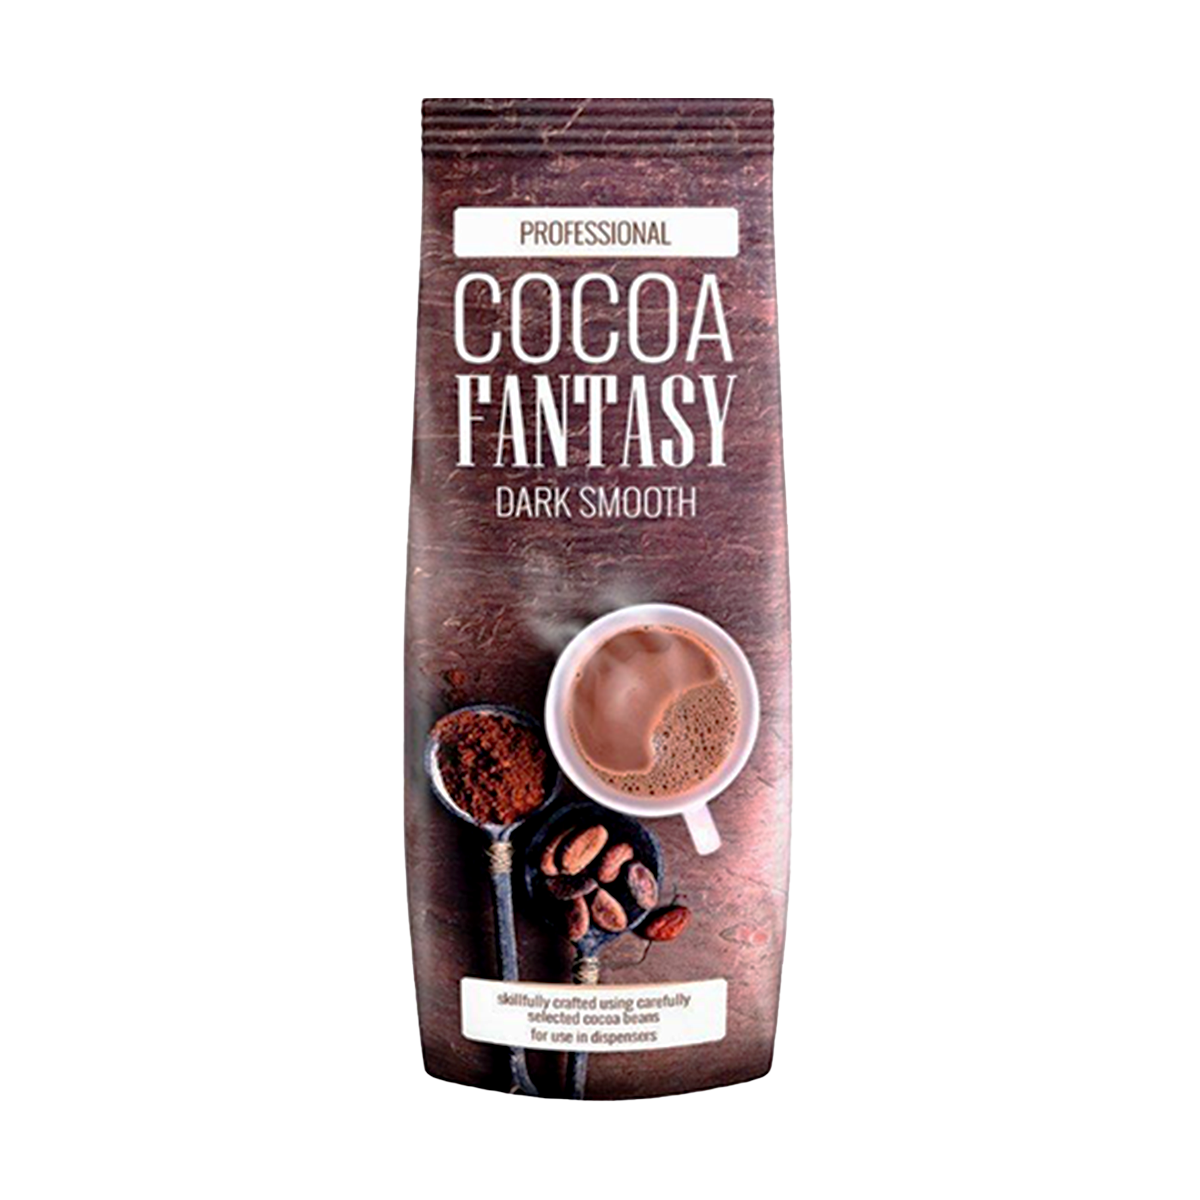 Cocoa Fantasy - Dark Smooth